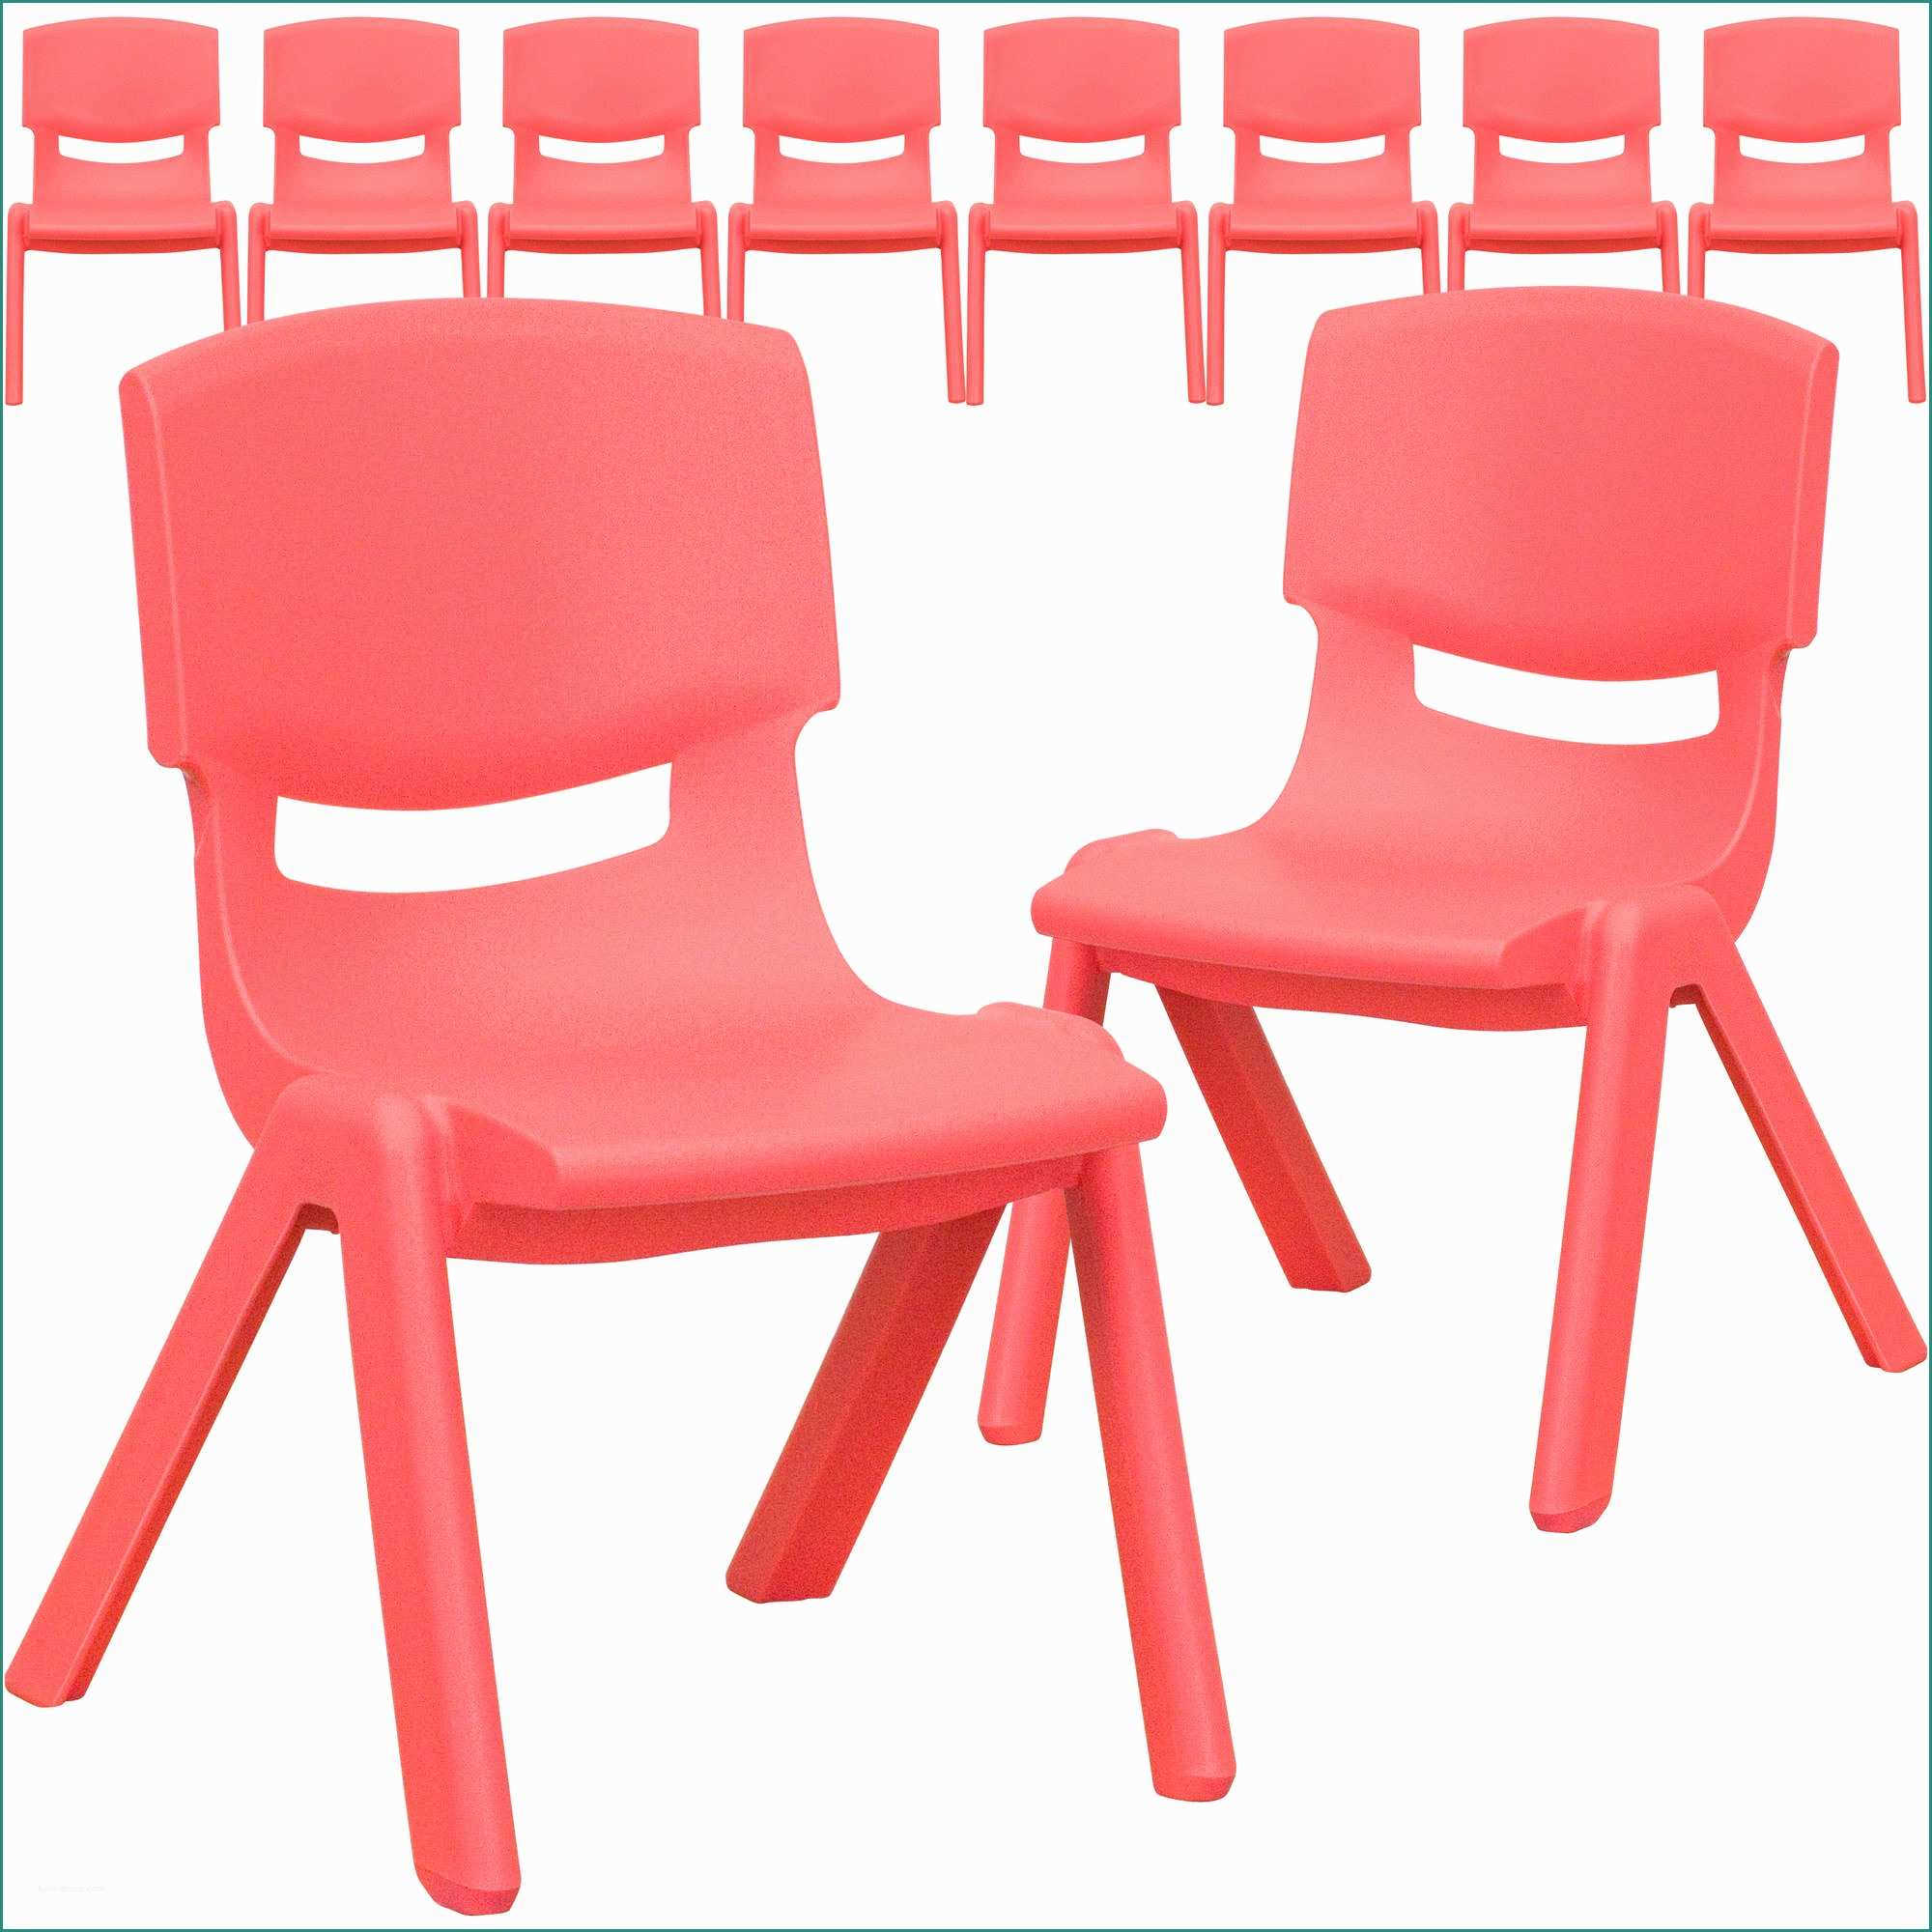 Sedie Ufficio Amazon E School Chair Wonderful Red School Chair Free